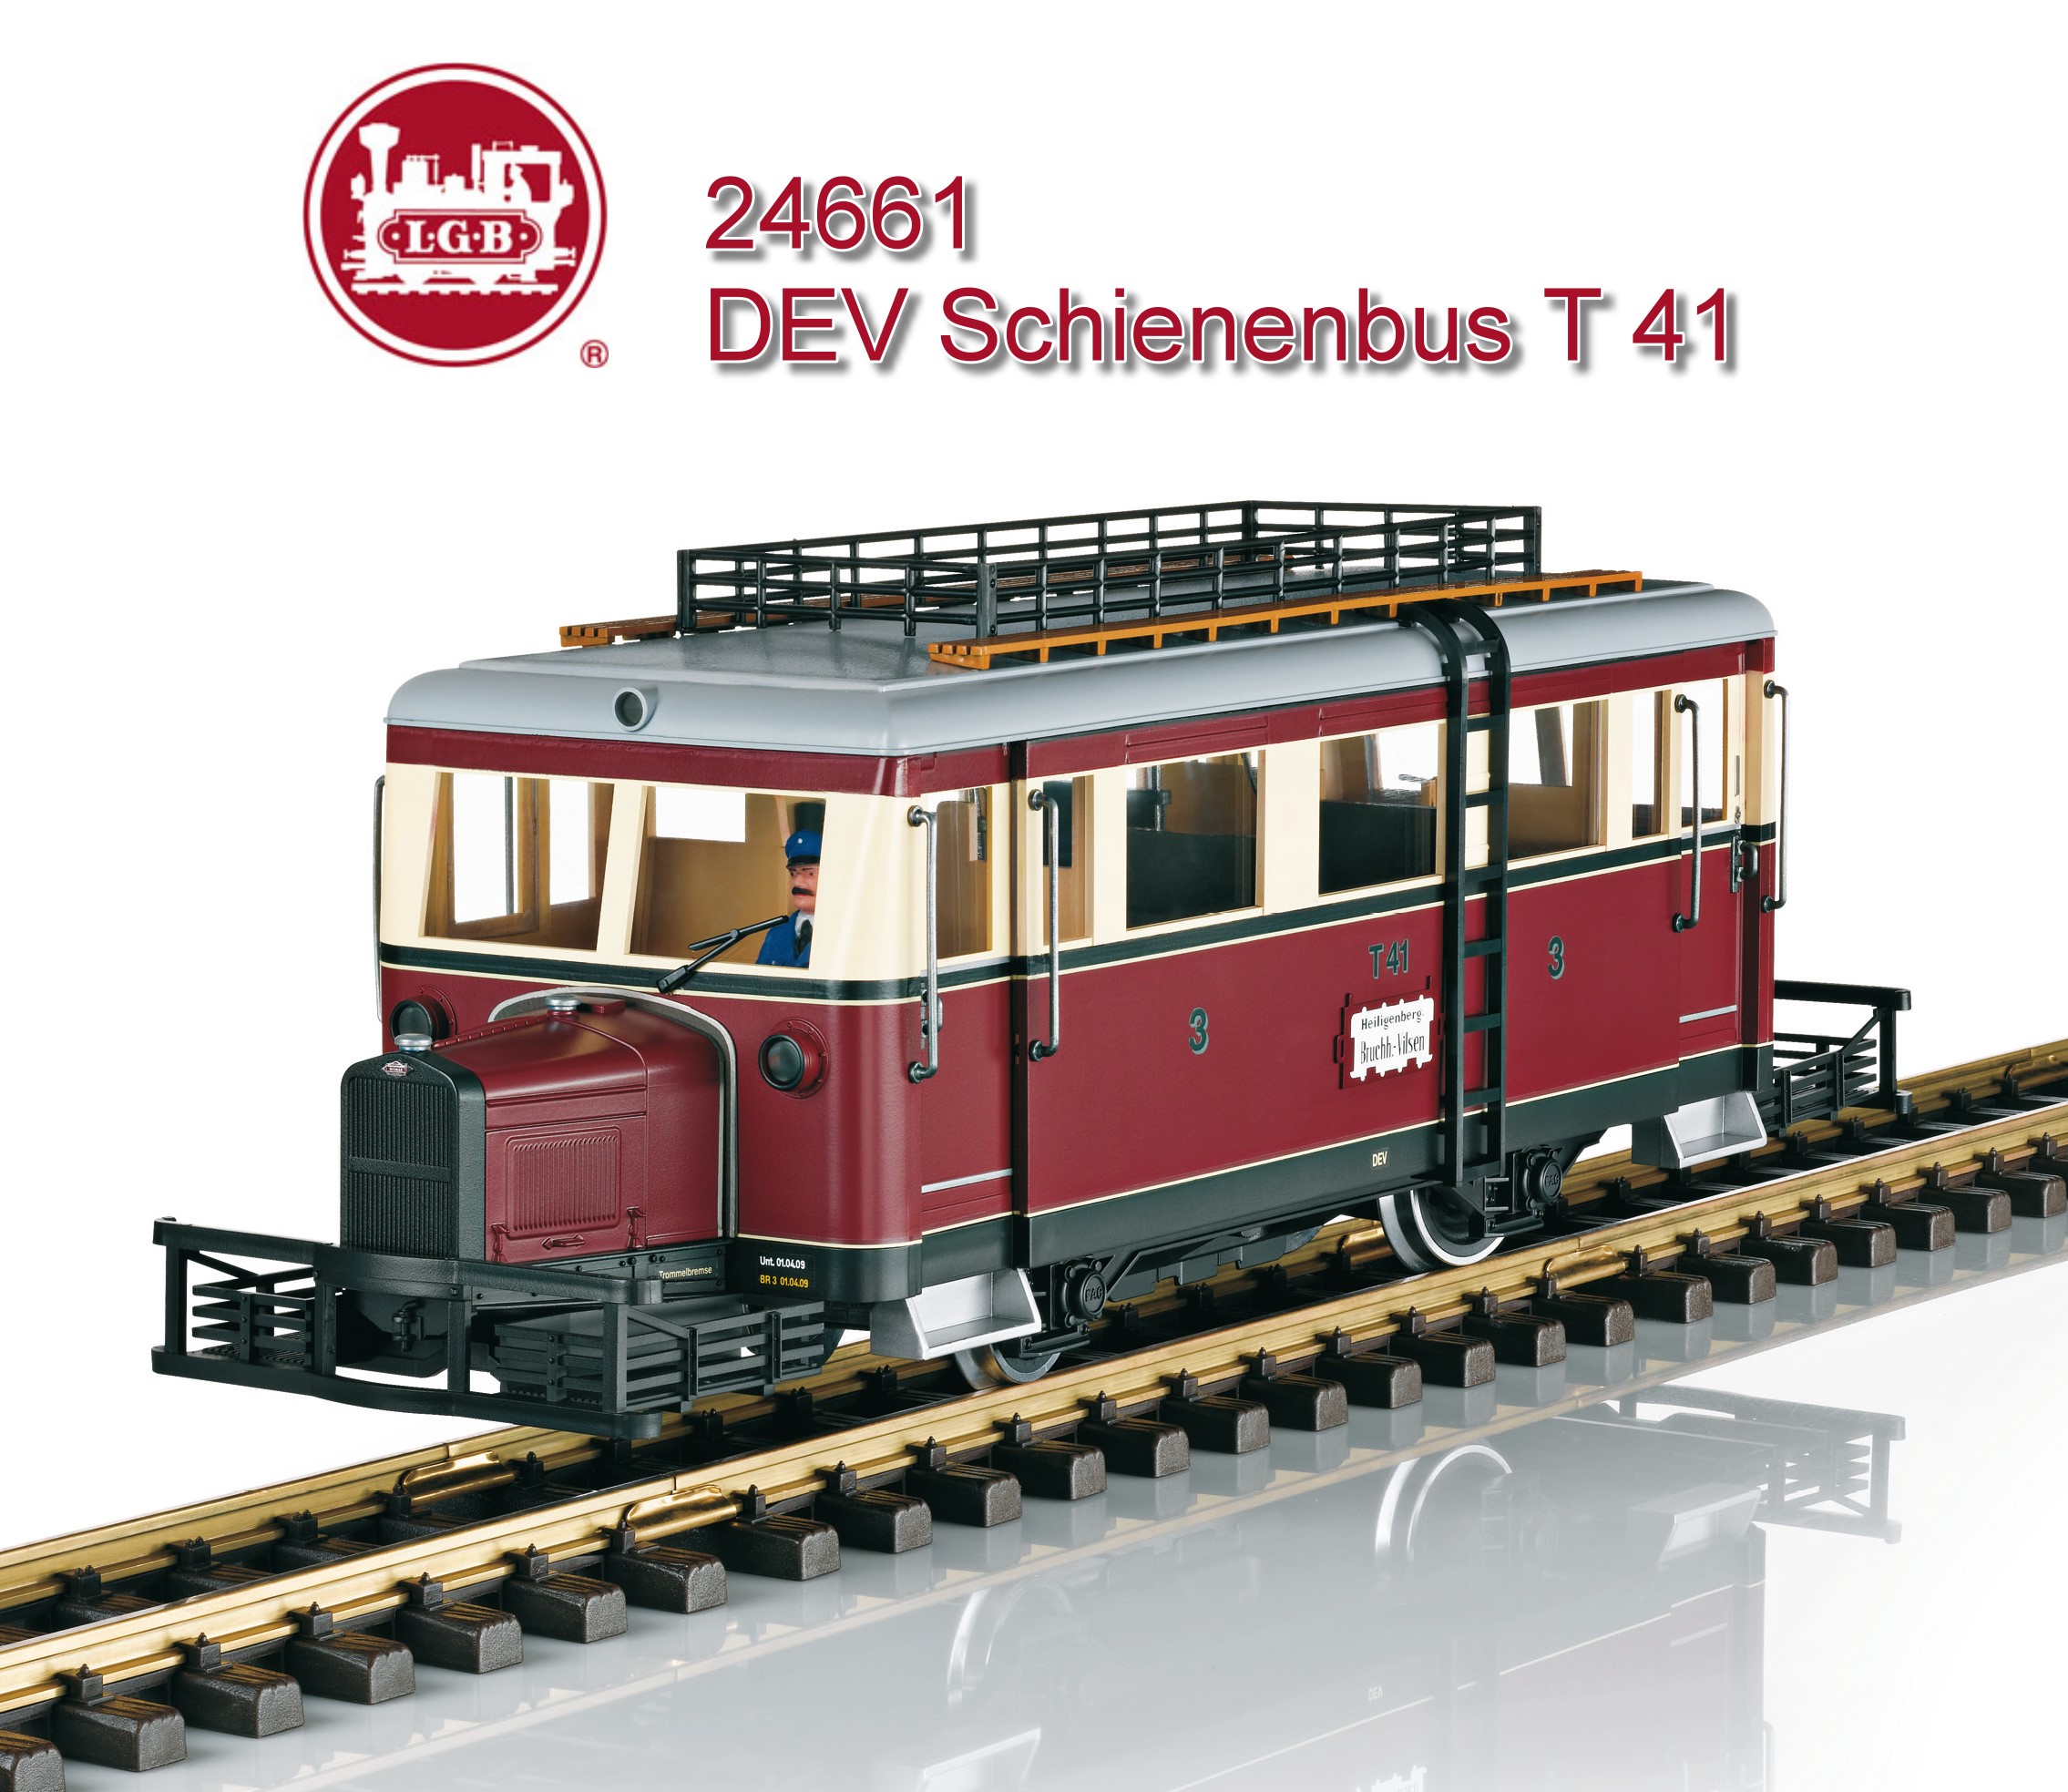 LGB Art. Nr. 24661 - Modell des Wismarer Schienenbuses T41 in dunkelrot / elfenbein